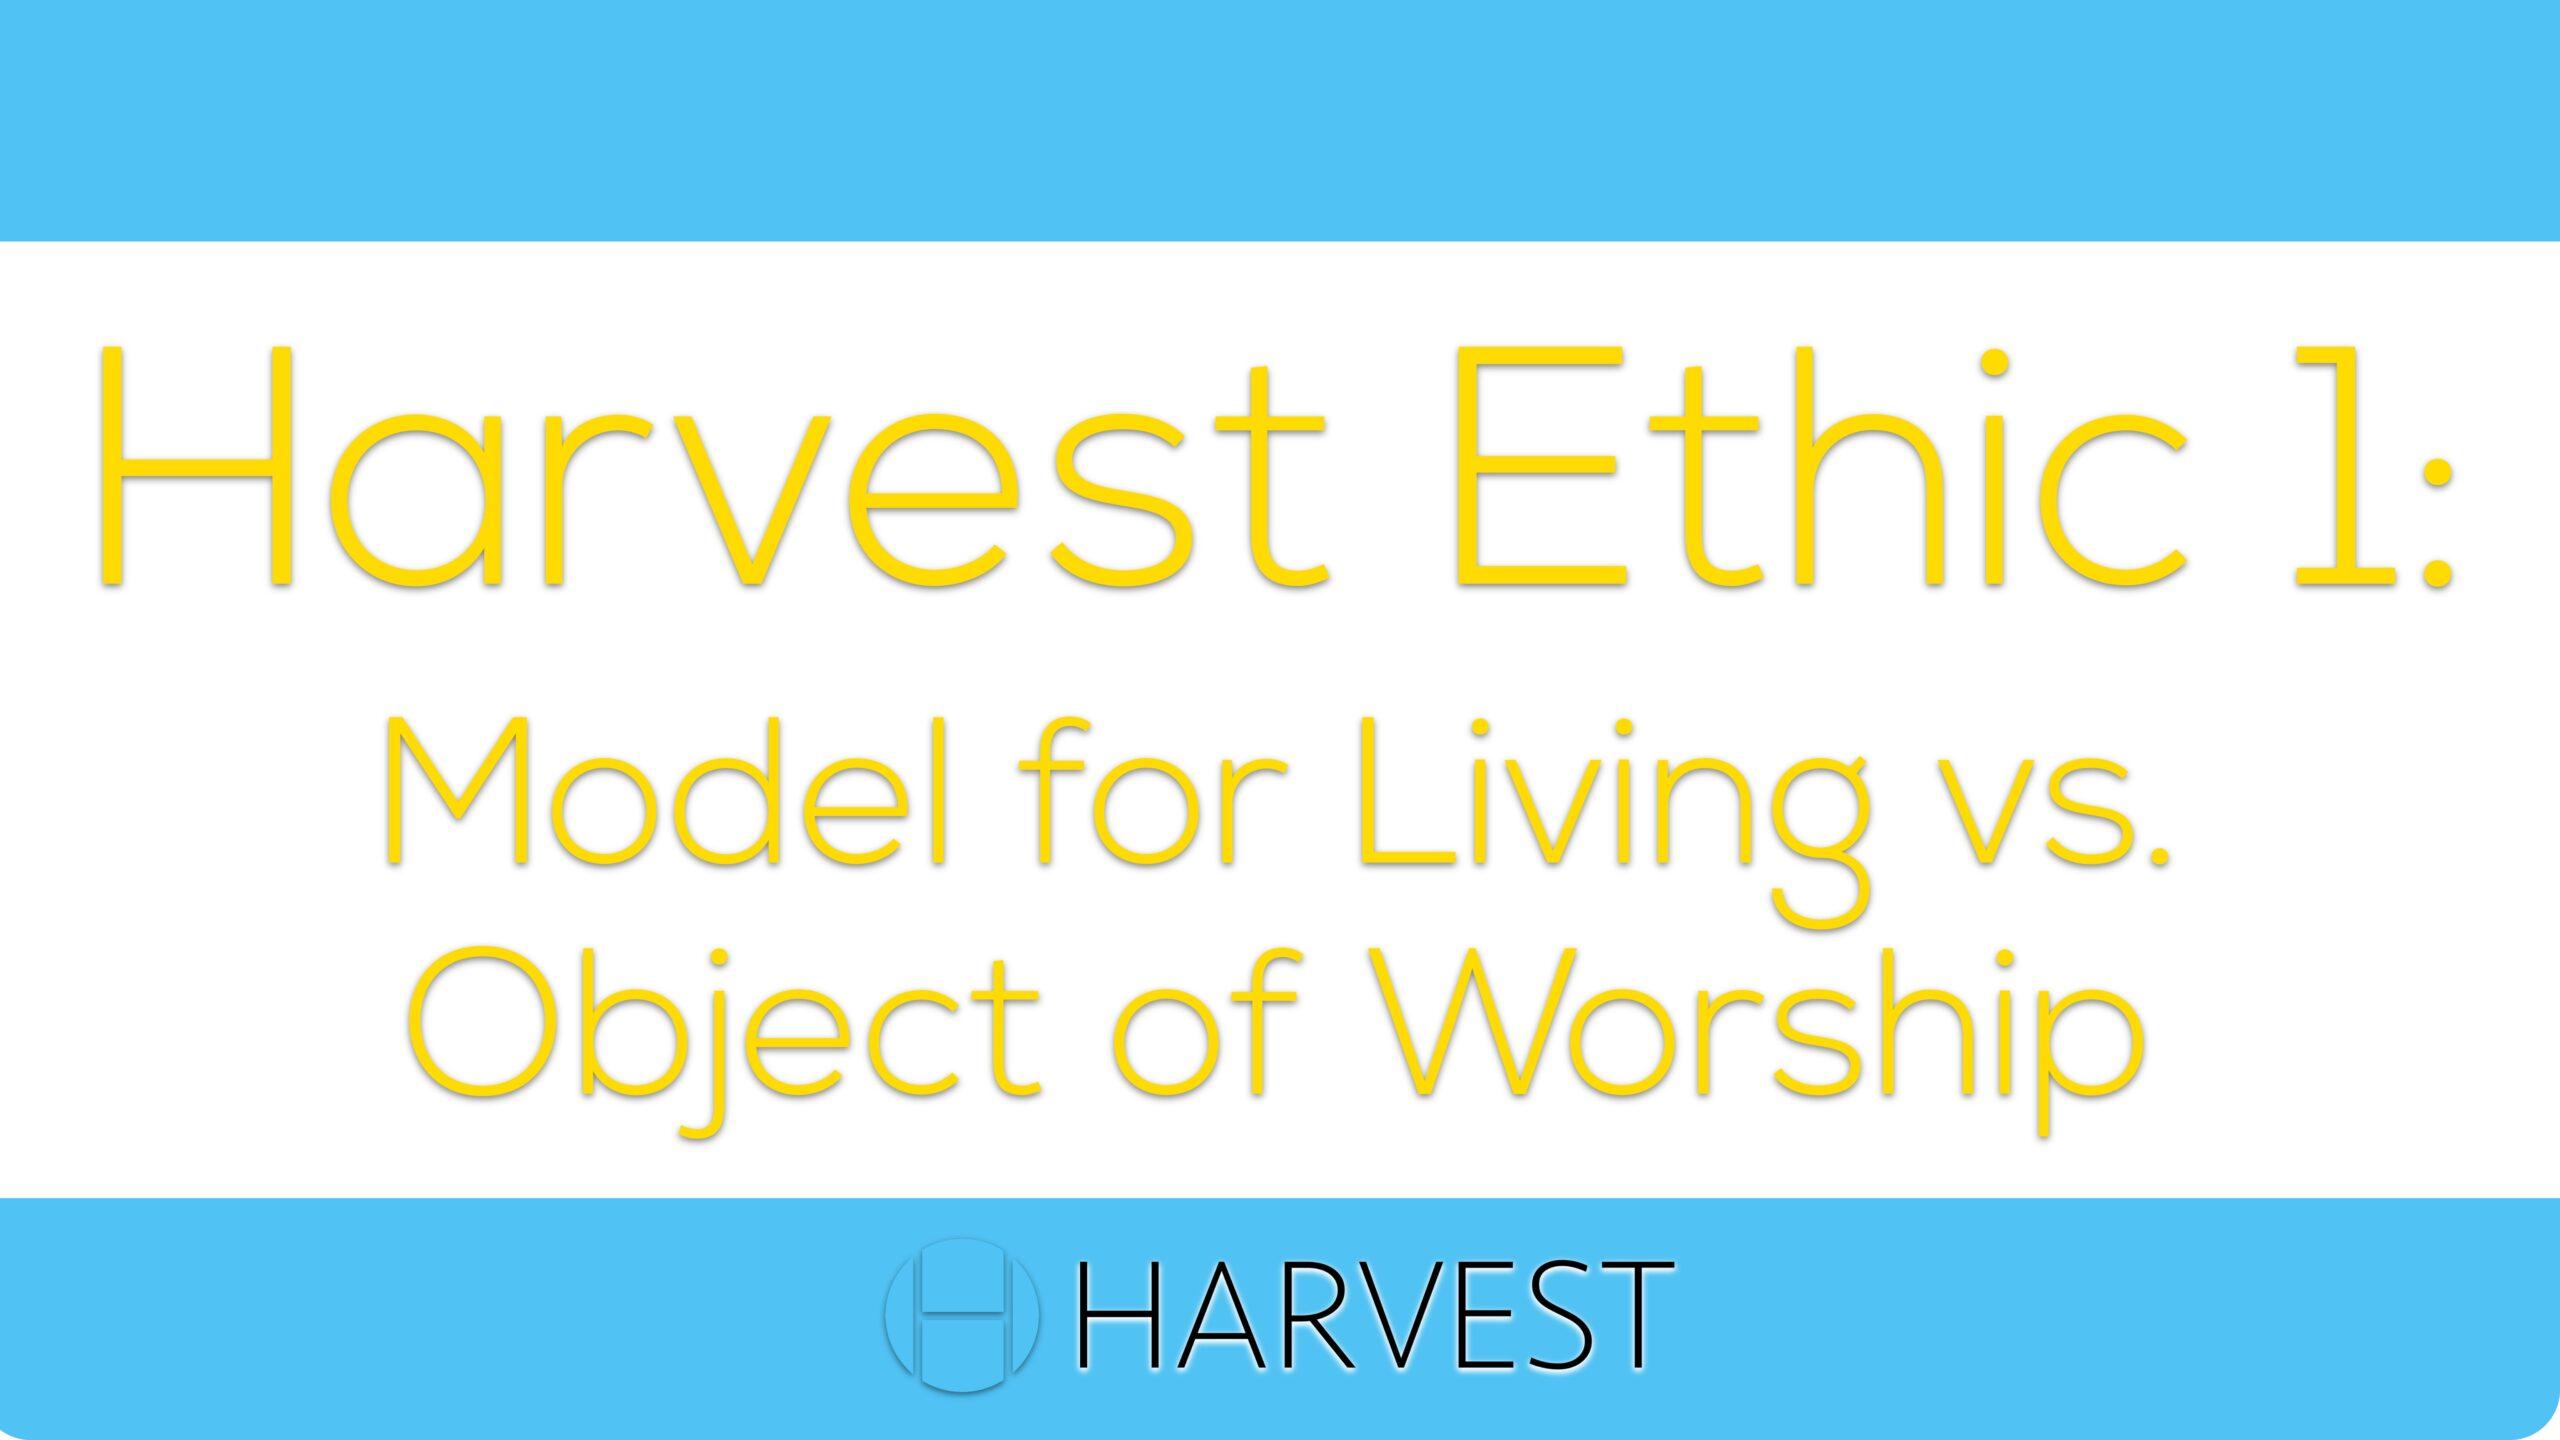 Harvest Ethic 1: Model for Living vs. Object of Worship